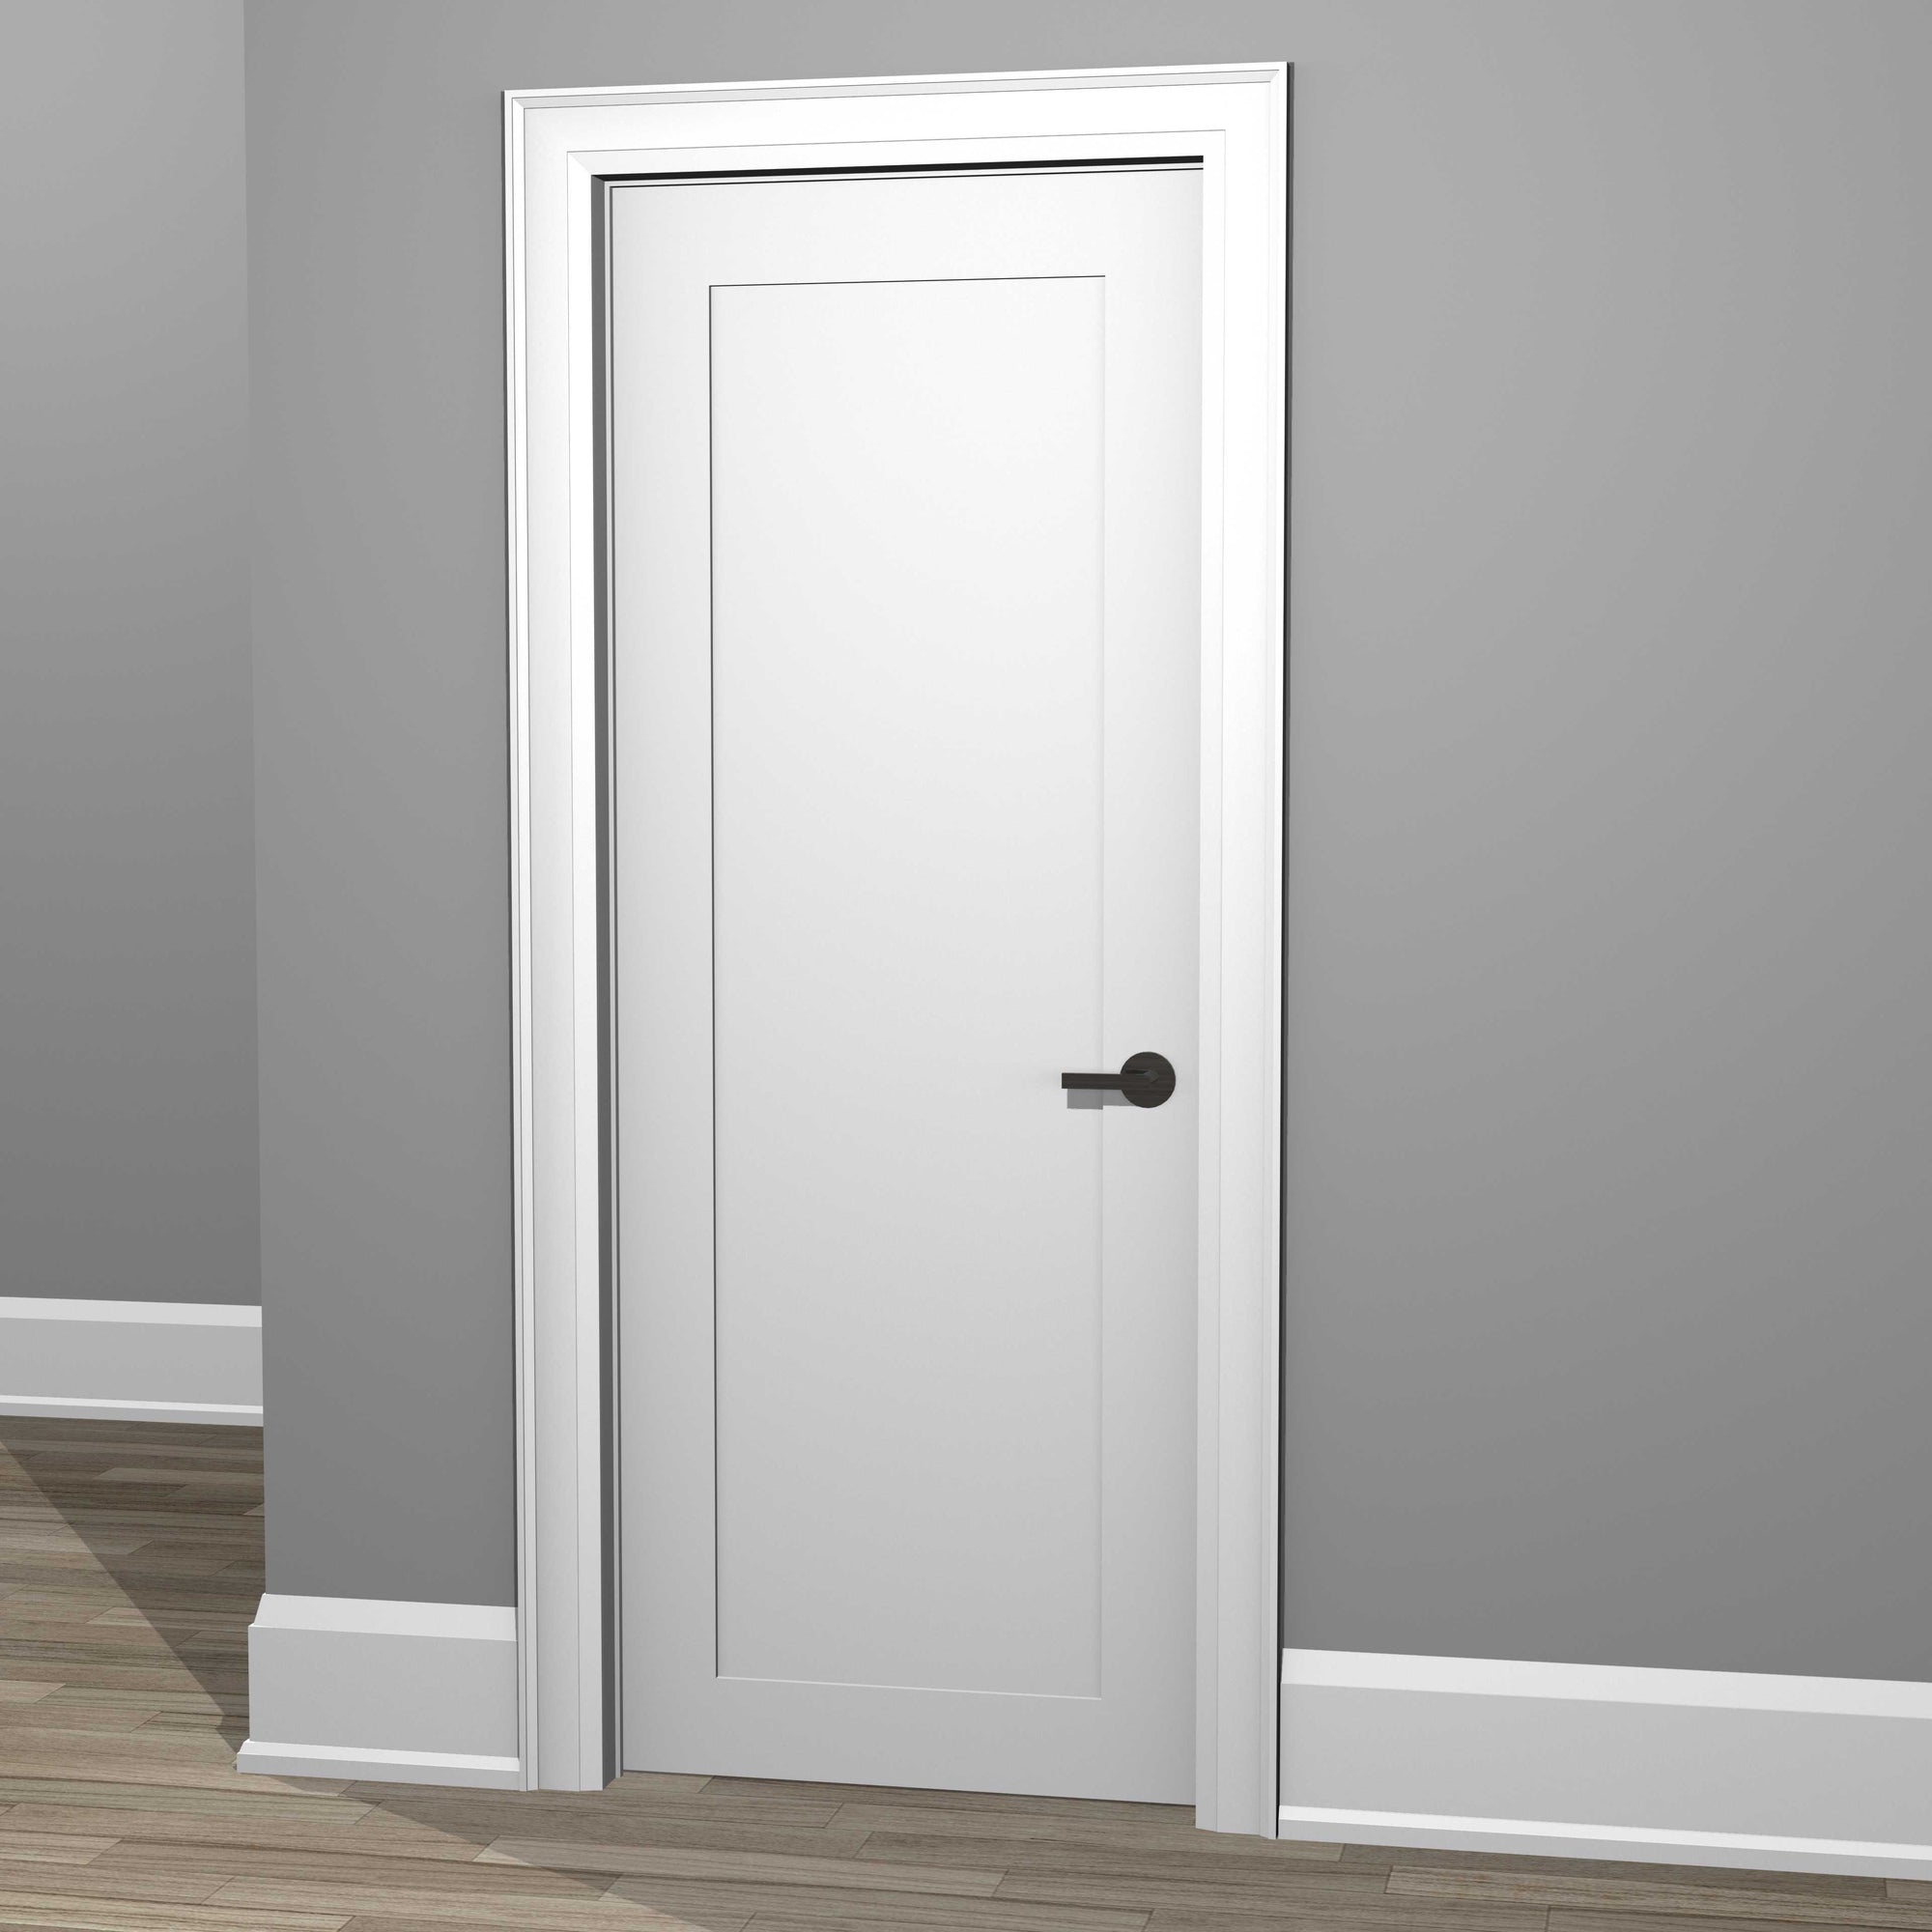 Contemporary Wood Door Stop Trim